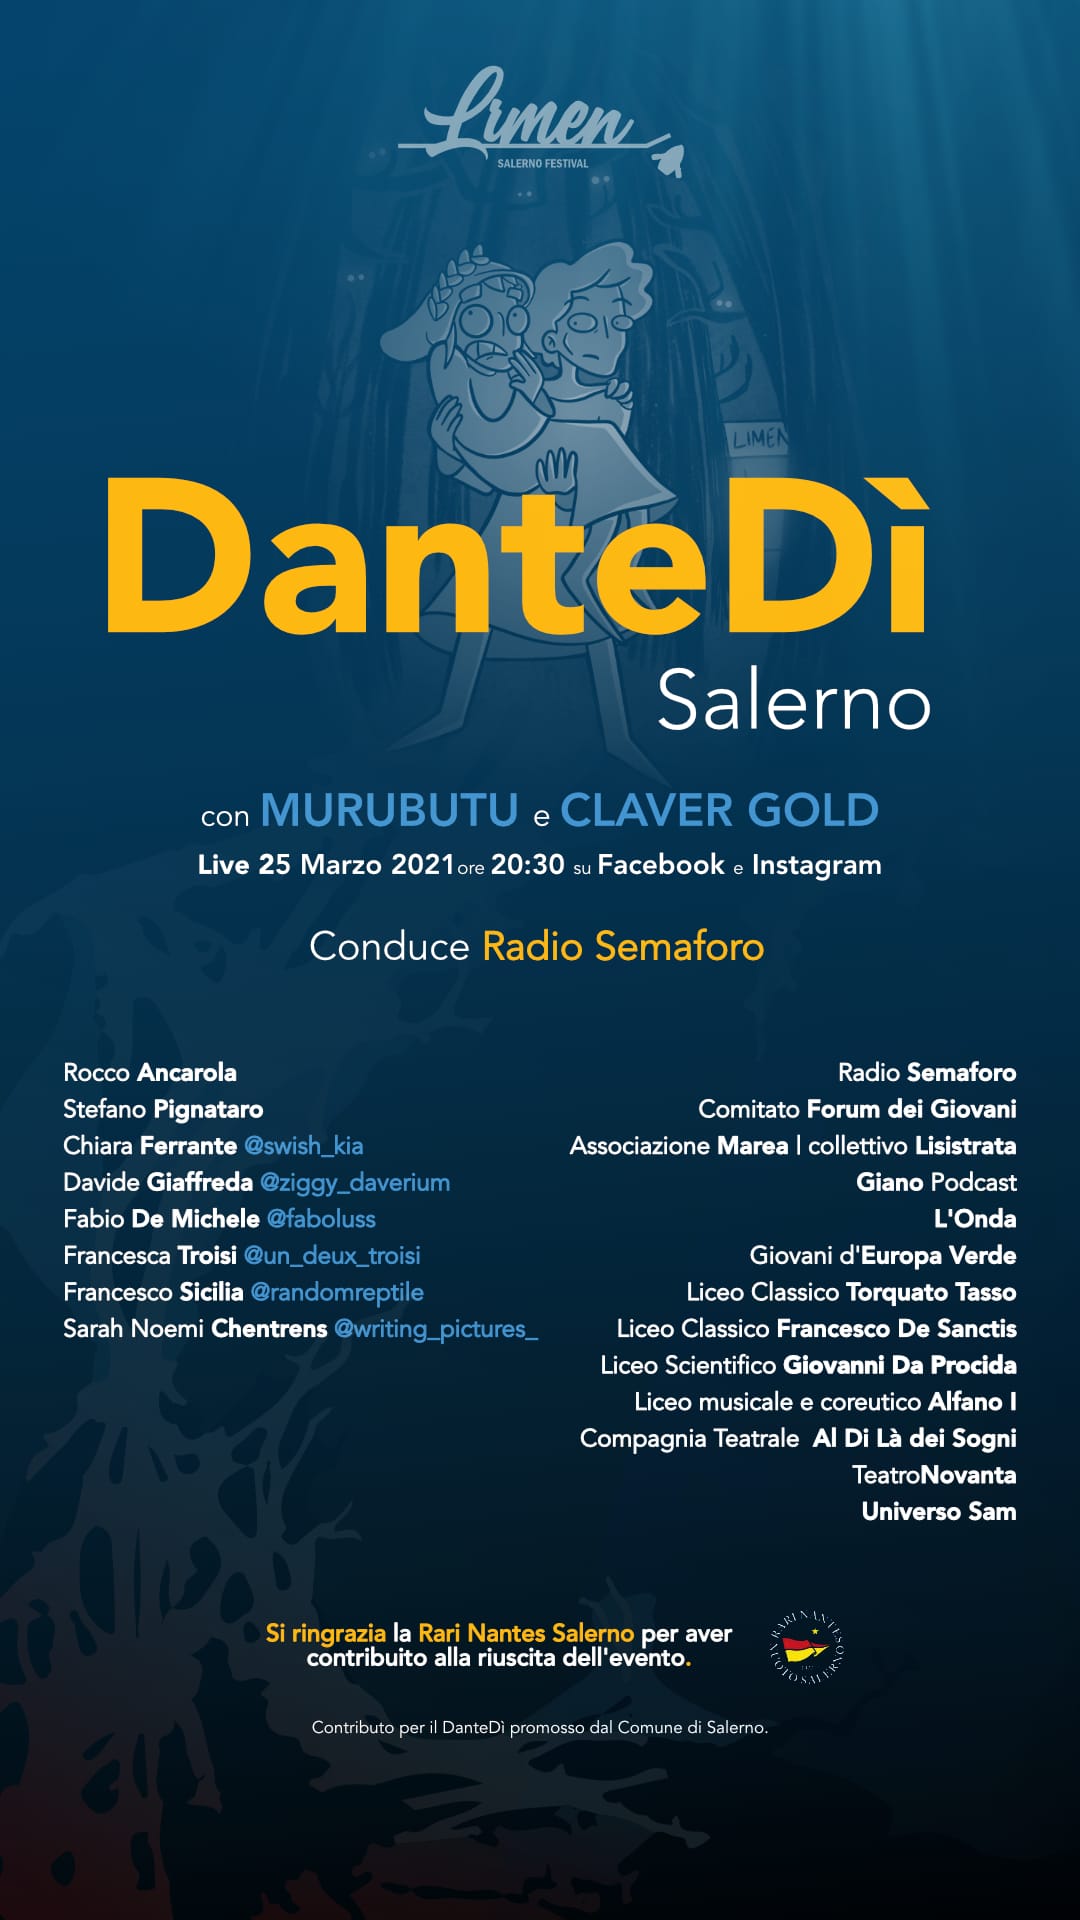 Limen Salerno celebra il Dantedì